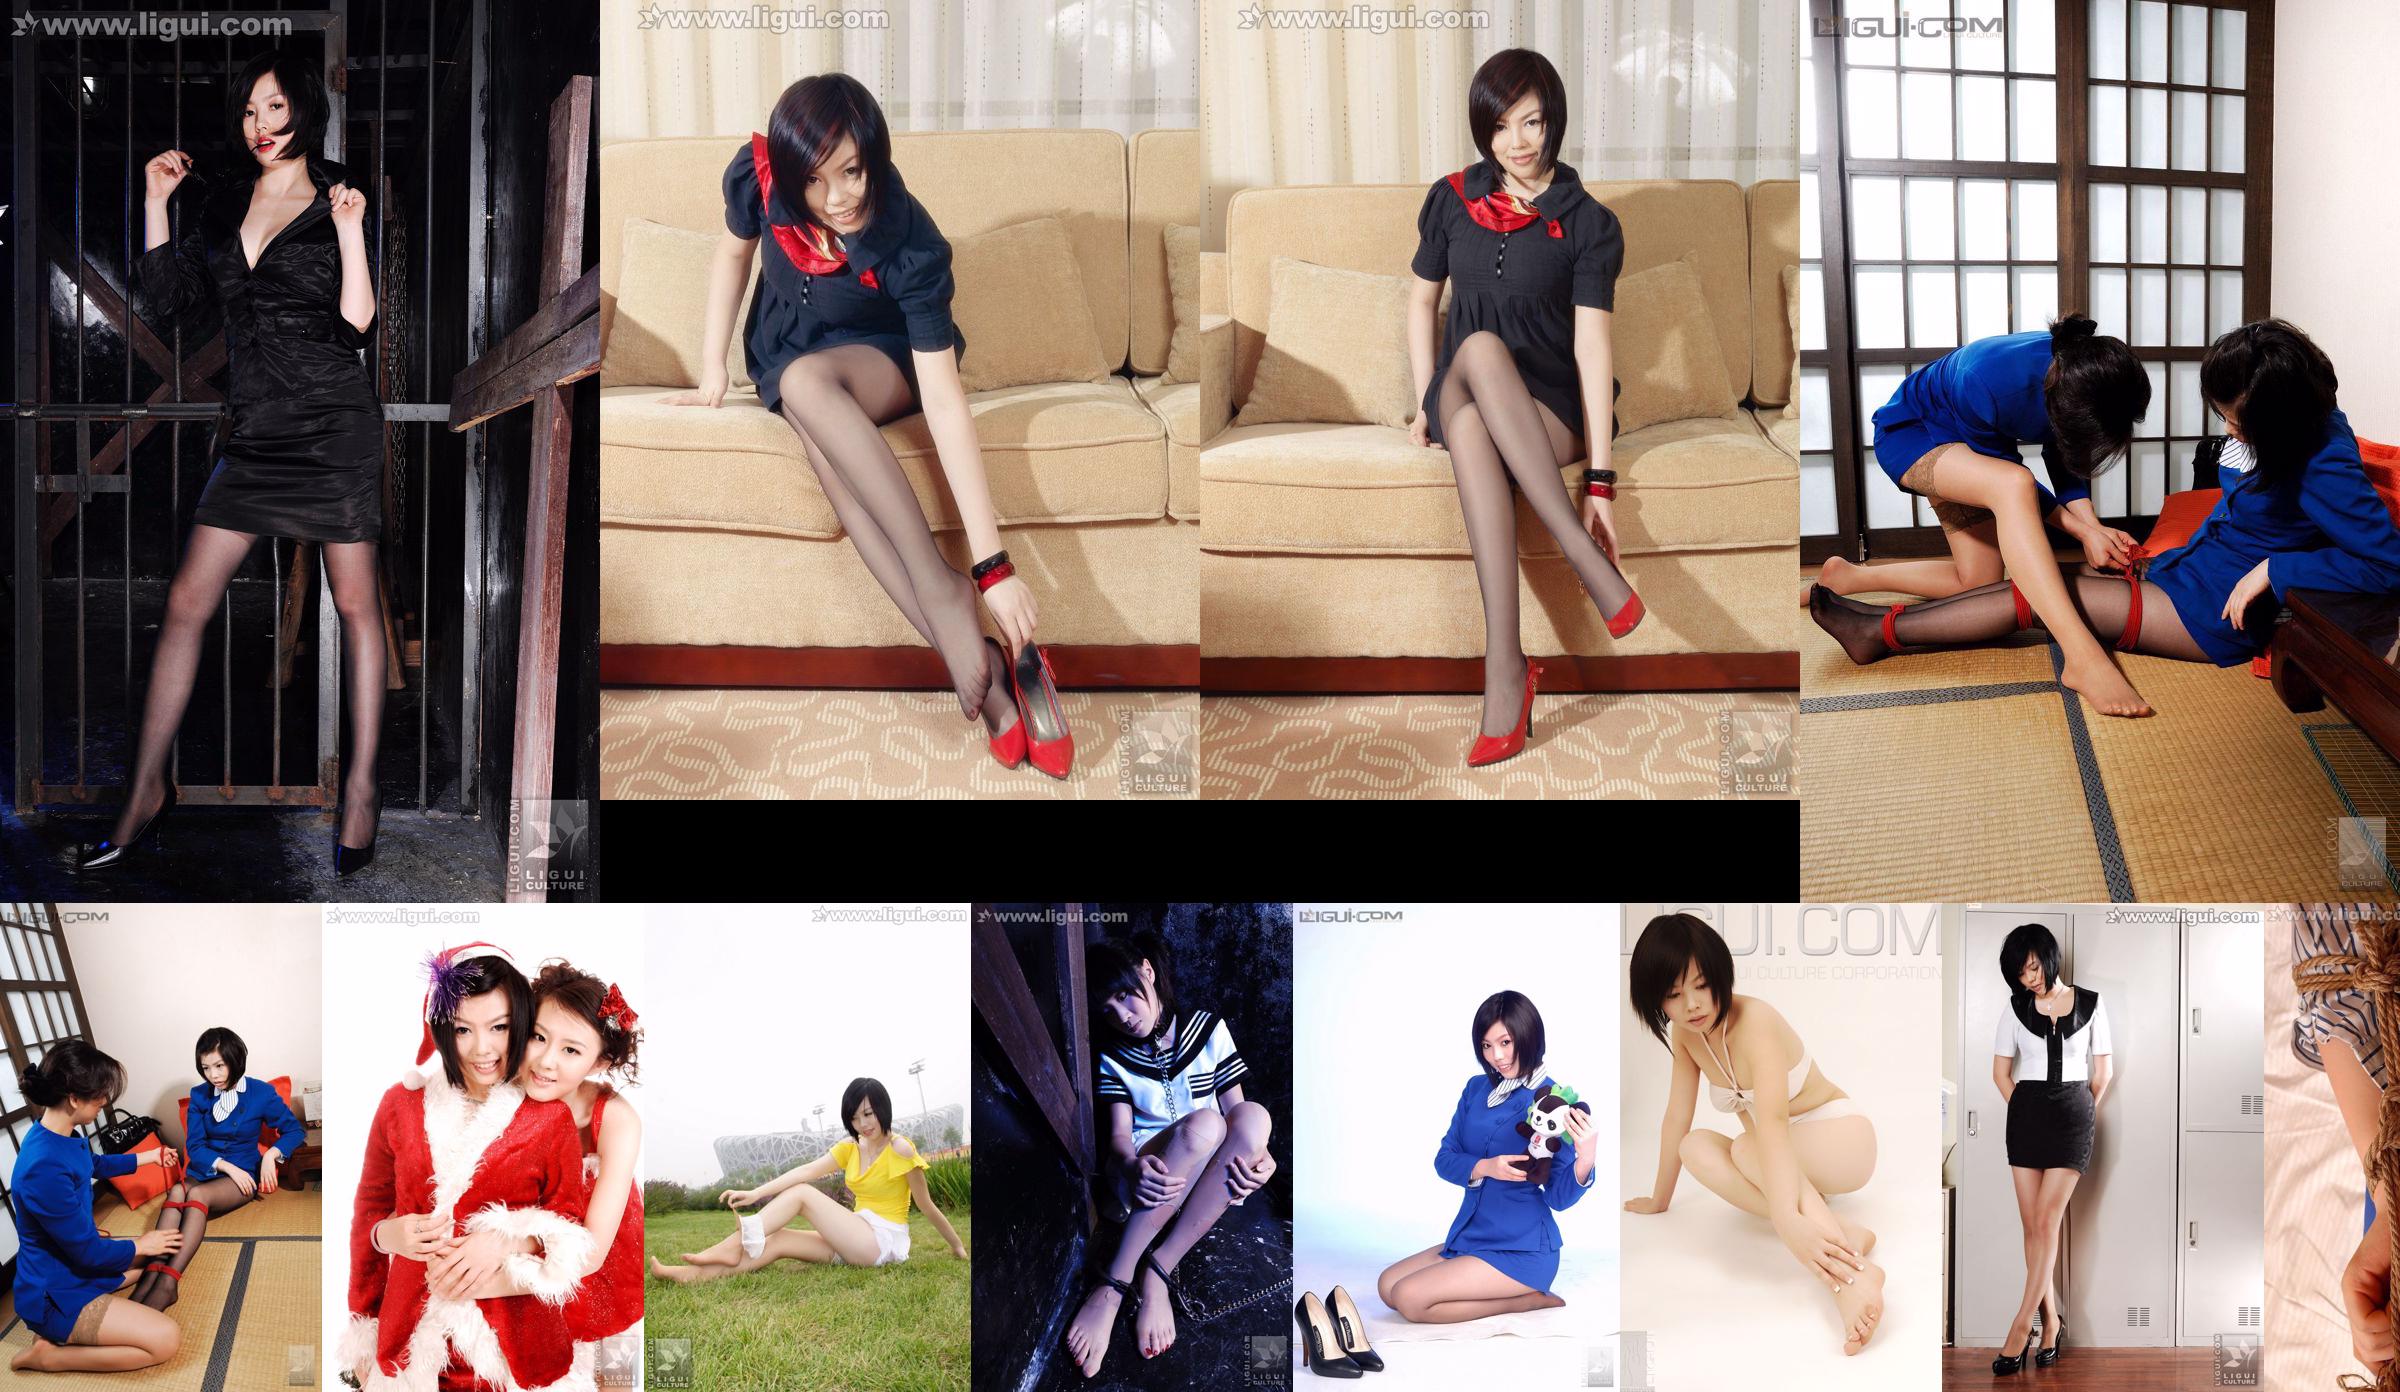 Người mẫu Muzi "Nữ tiếp viên xinh đẹp đi giày cao gót: Tình yêu của Nữ hoàng" [丽 柜 LiGui] Ảnh chân tơ tằm No.1f4189 Trang 5